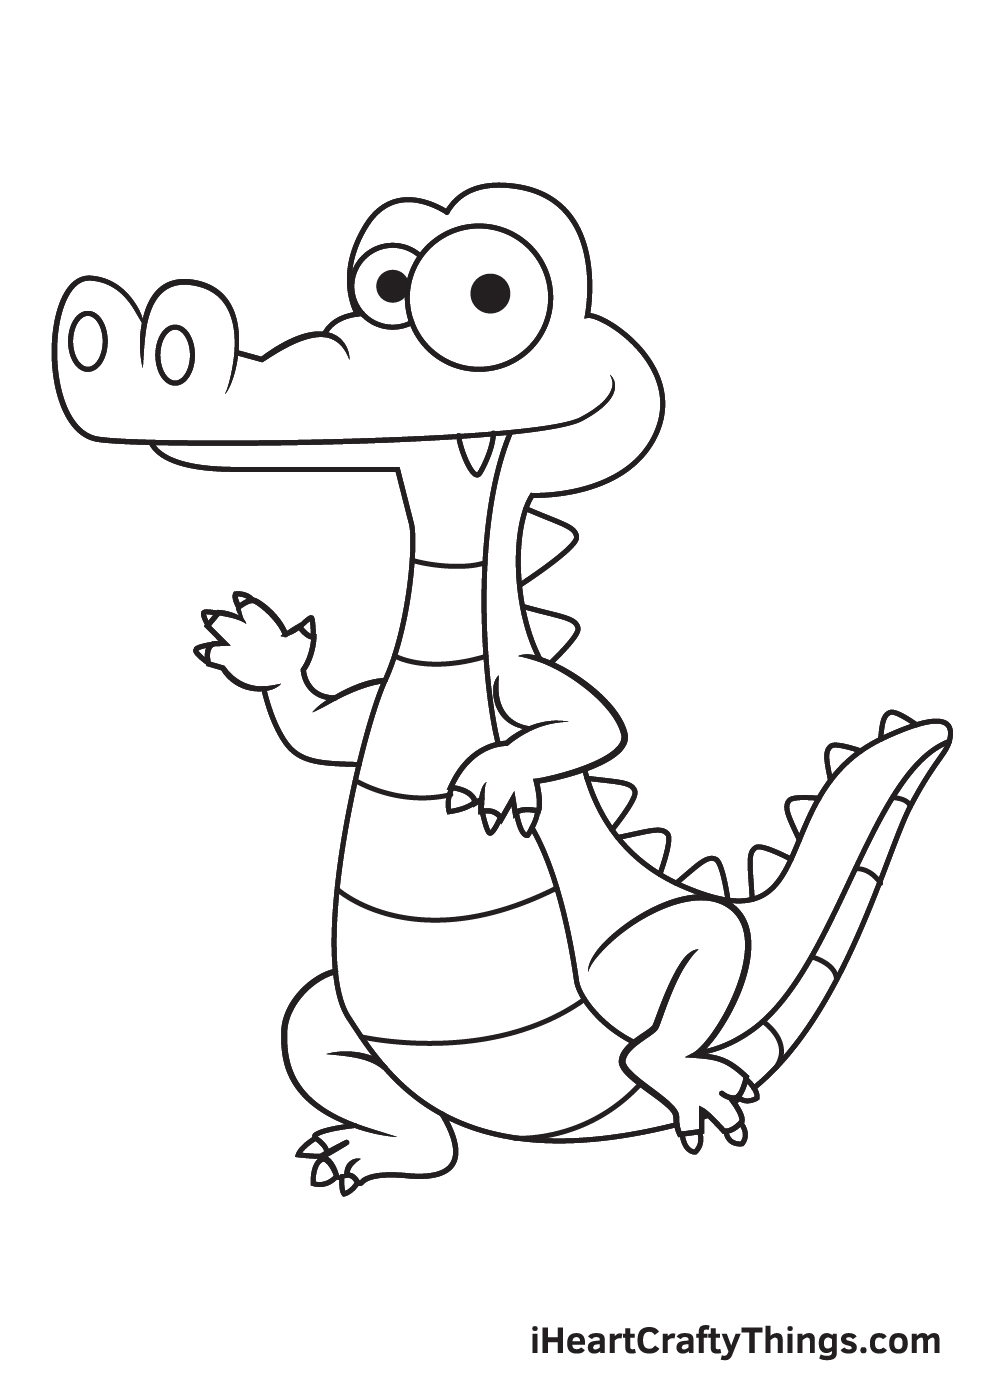 Vẽ cá sấu - Bước 9